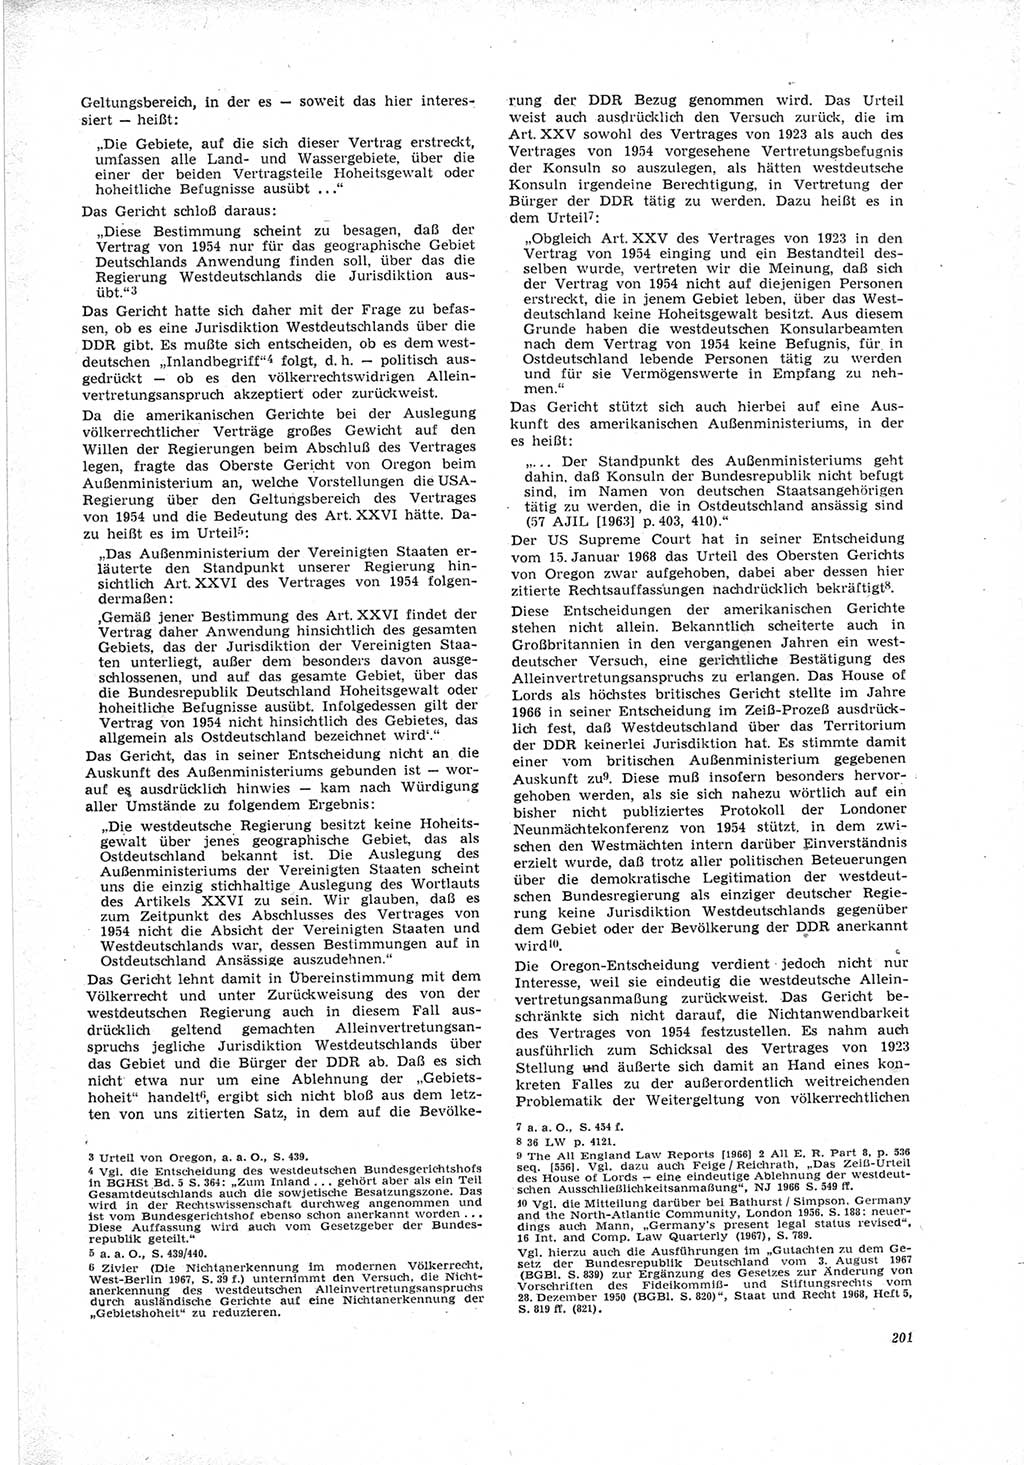 Neue Justiz (NJ), Zeitschrift für Recht und Rechtswissenschaft [Deutsche Demokratische Republik (DDR)], 23. Jahrgang 1969, Seite 201 (NJ DDR 1969, S. 201)